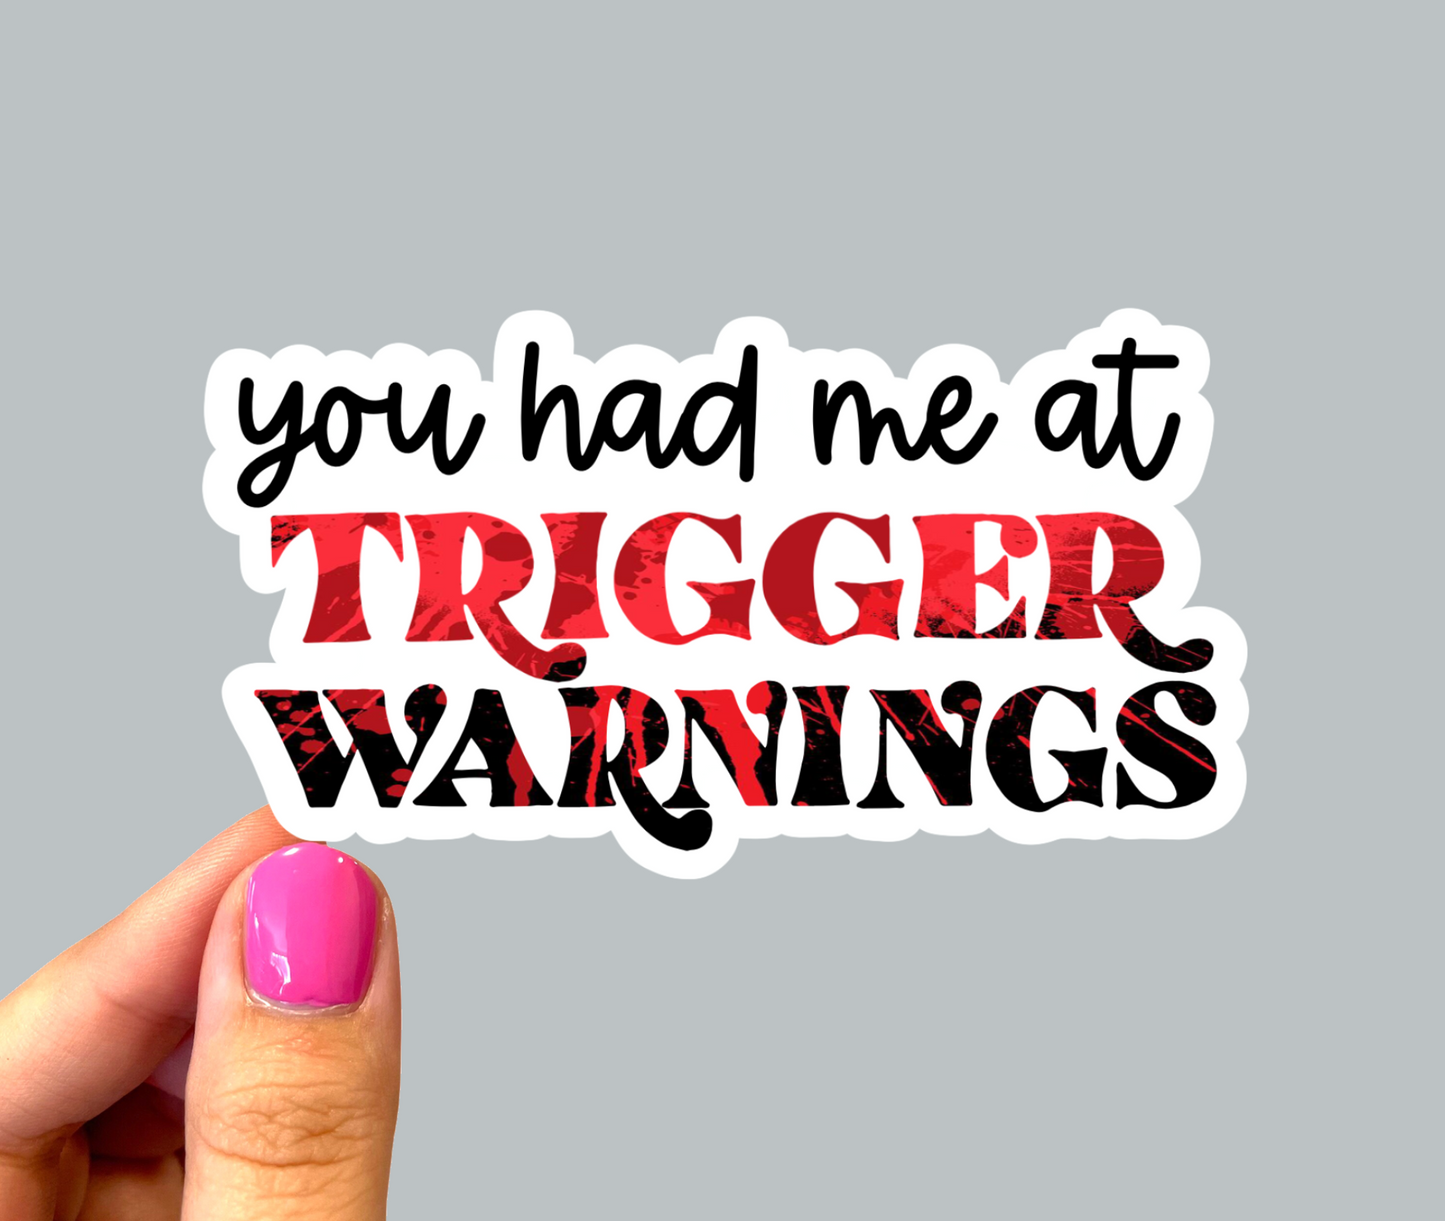 You had me at trigger warnings